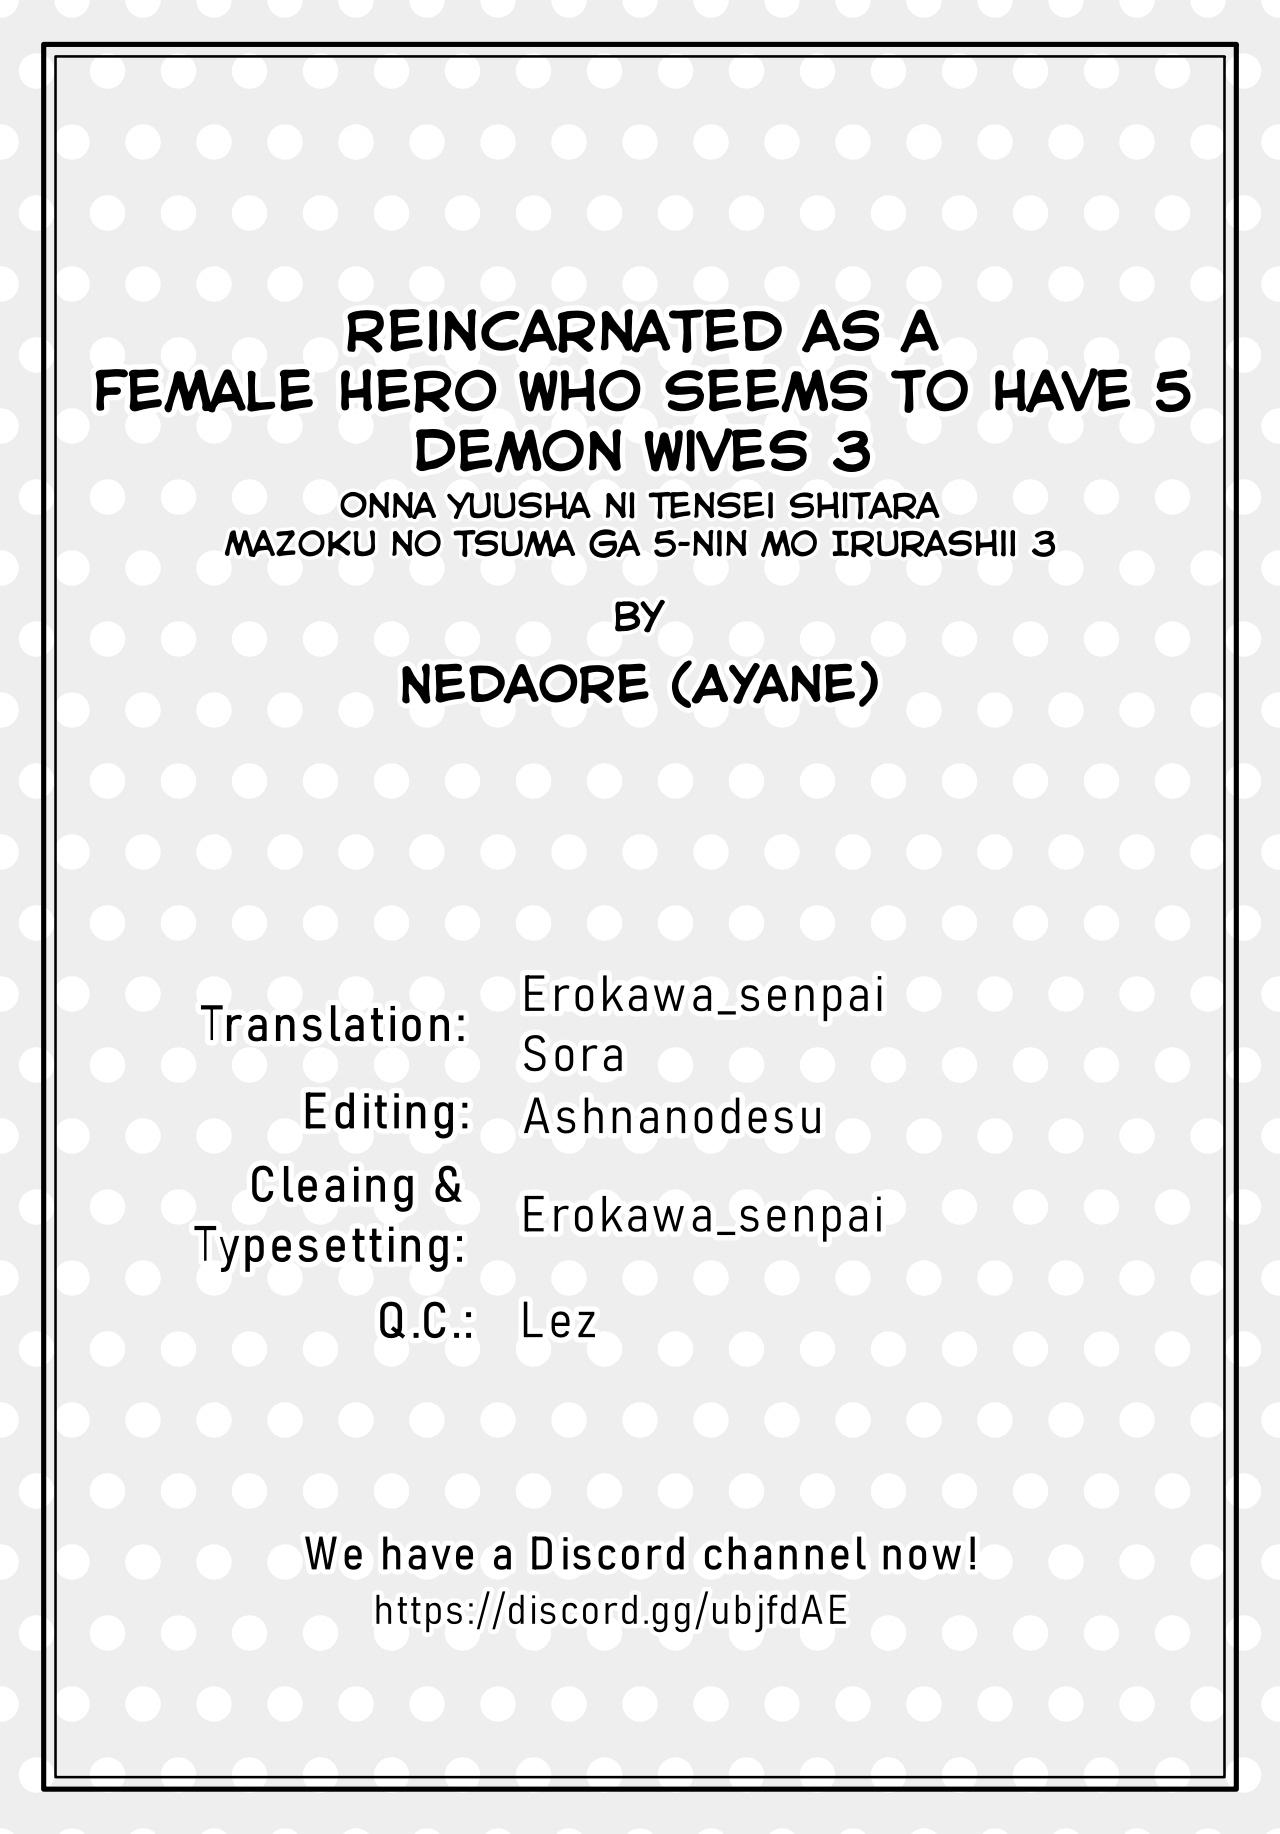 Onna Yuusha ni Tensei Shitara Mazoku no Tsuma ga 5-nin mo Irurashii 3 | Reincarnated as a Female Hero Who Seems to Have 5 Demon Wives 3 35